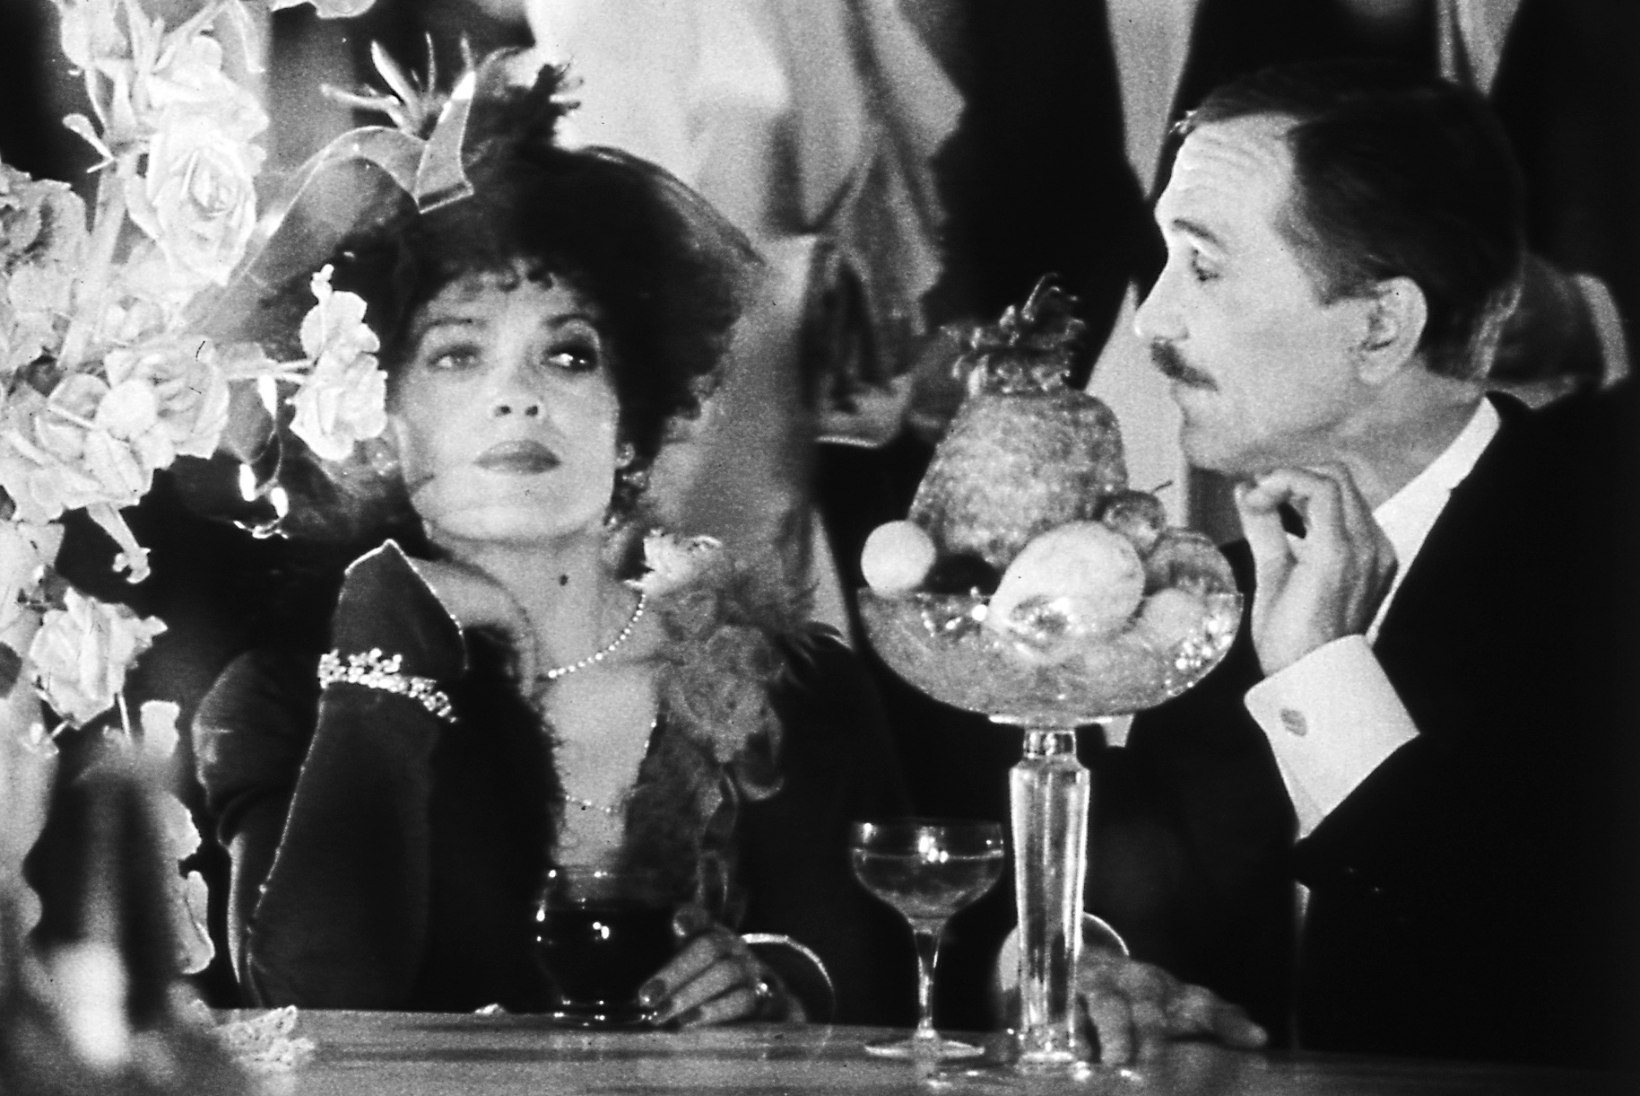 Ago-Endrik Kerge: „Mulle alati õudselt meeldis lolle vene filminatšalnikuid tillist tõmmata ja see õnnestus ka „Savoy balli“ juures.“